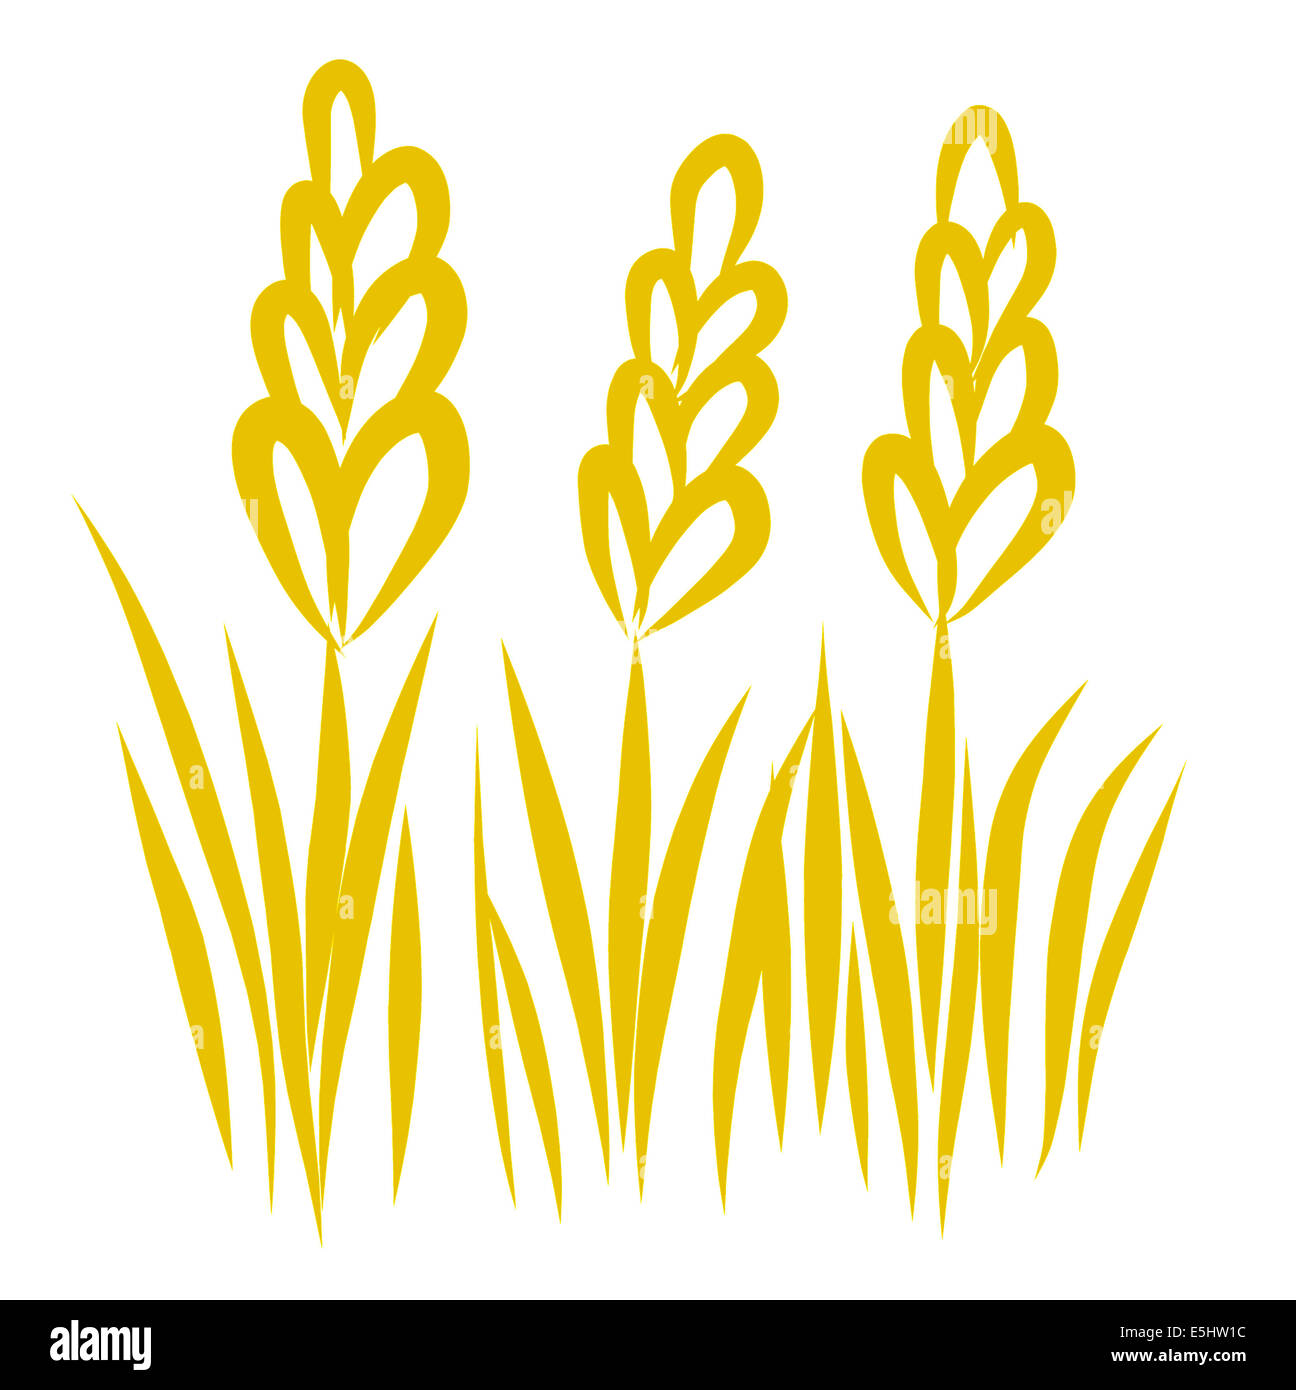 Illustration of wheat Stock Photo